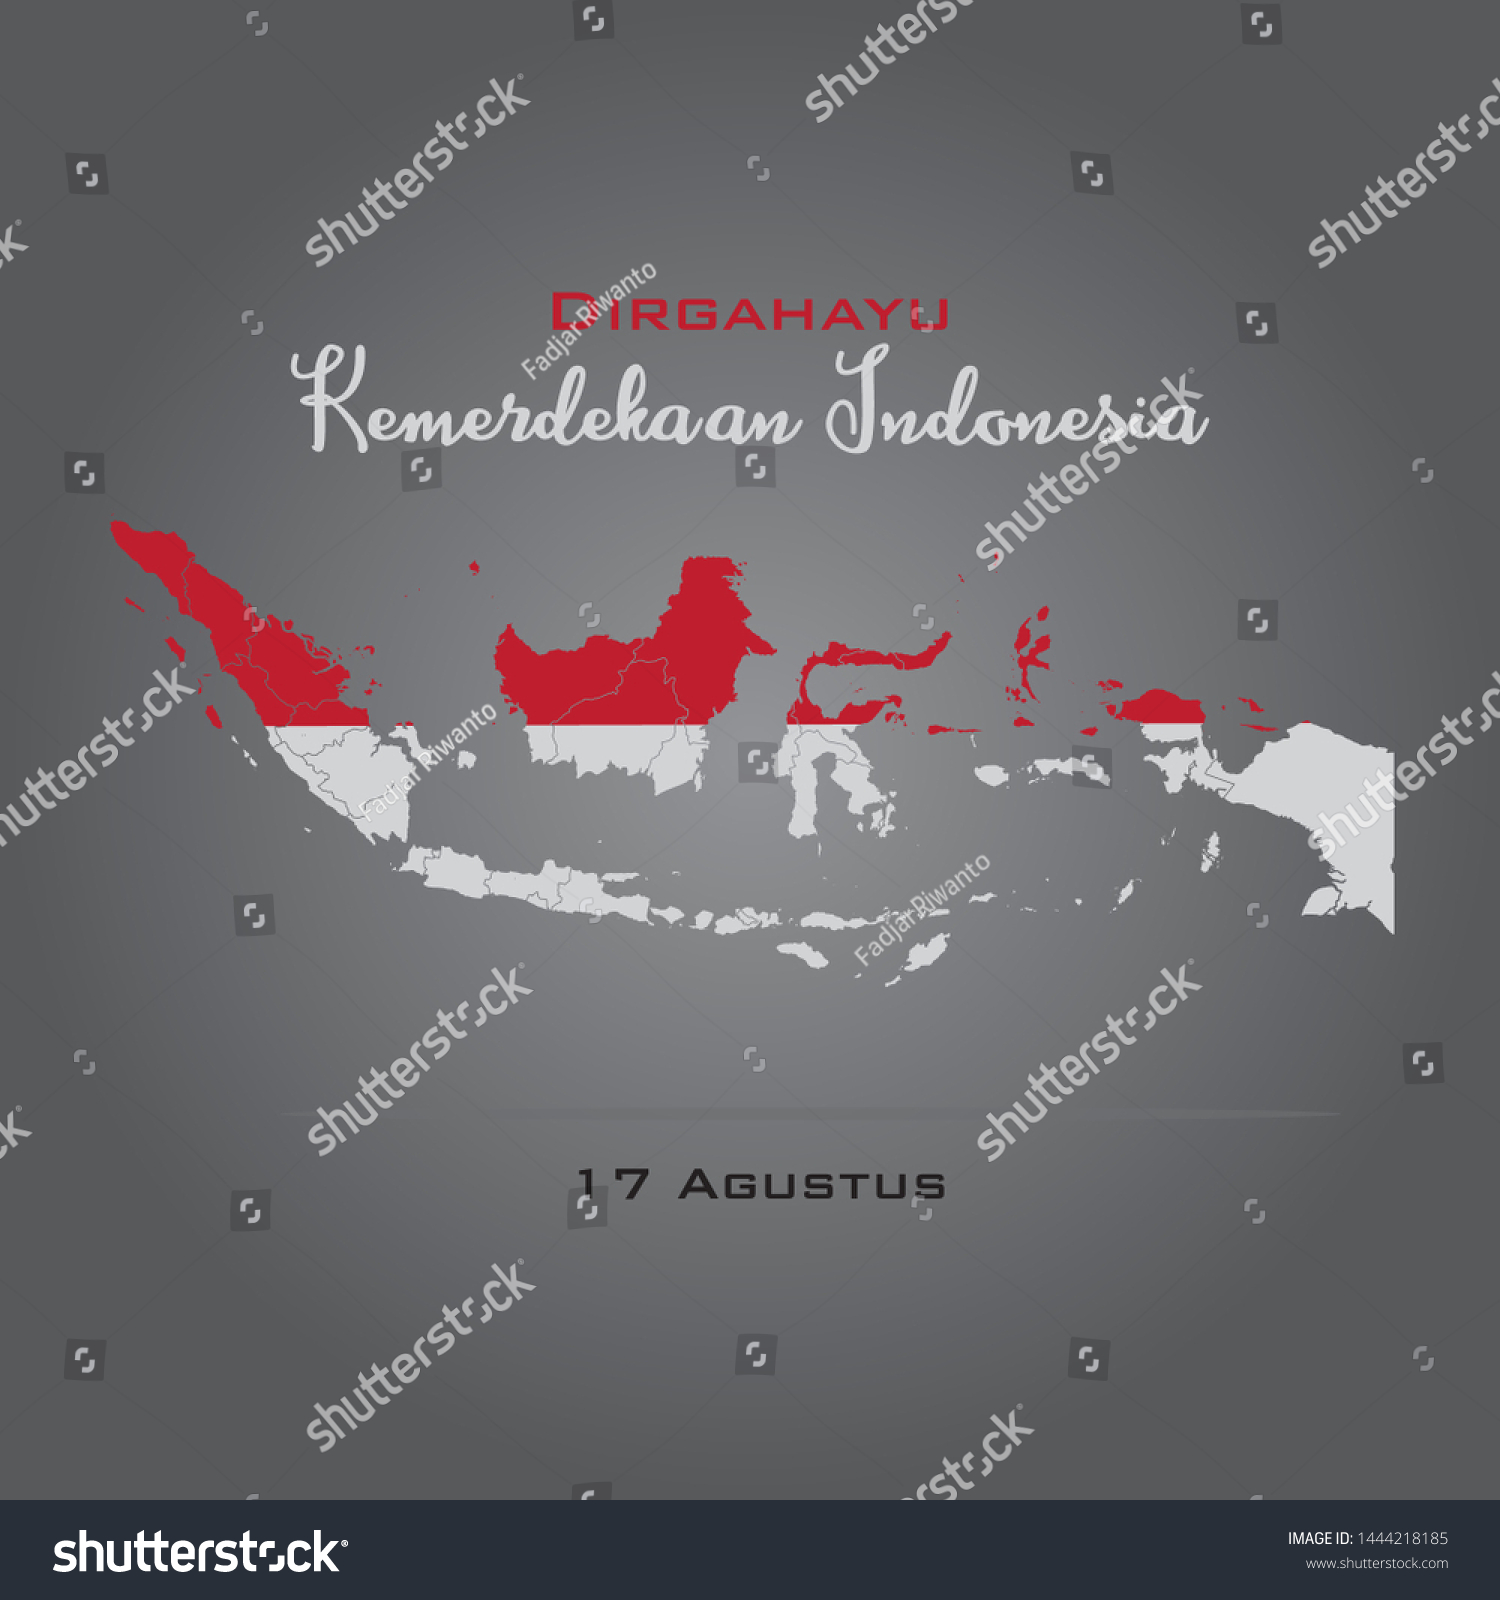 Dirgahayu Kemerdekaan Republik Indonesia Poster Royalty Free Stock Vector 1444218185 6629